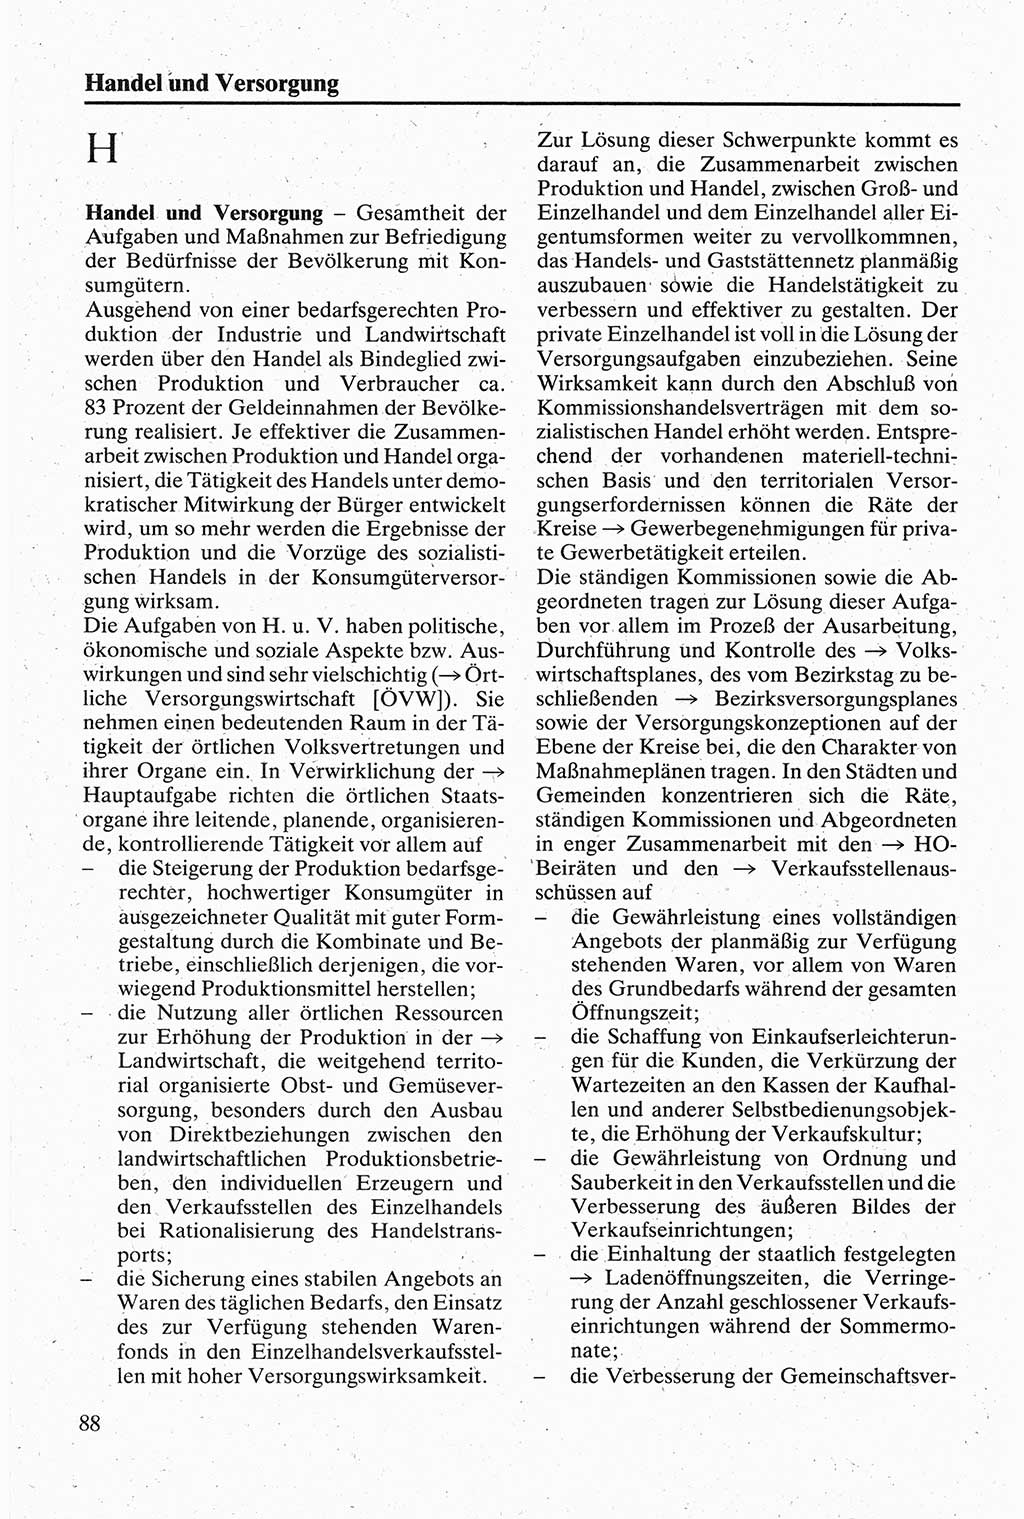 Handbuch für den Abgeordneten [Deutsche Demokratische Republik (DDR)] 1984, Seite 88 (Hb. Abg. DDR 1984, S. 88)